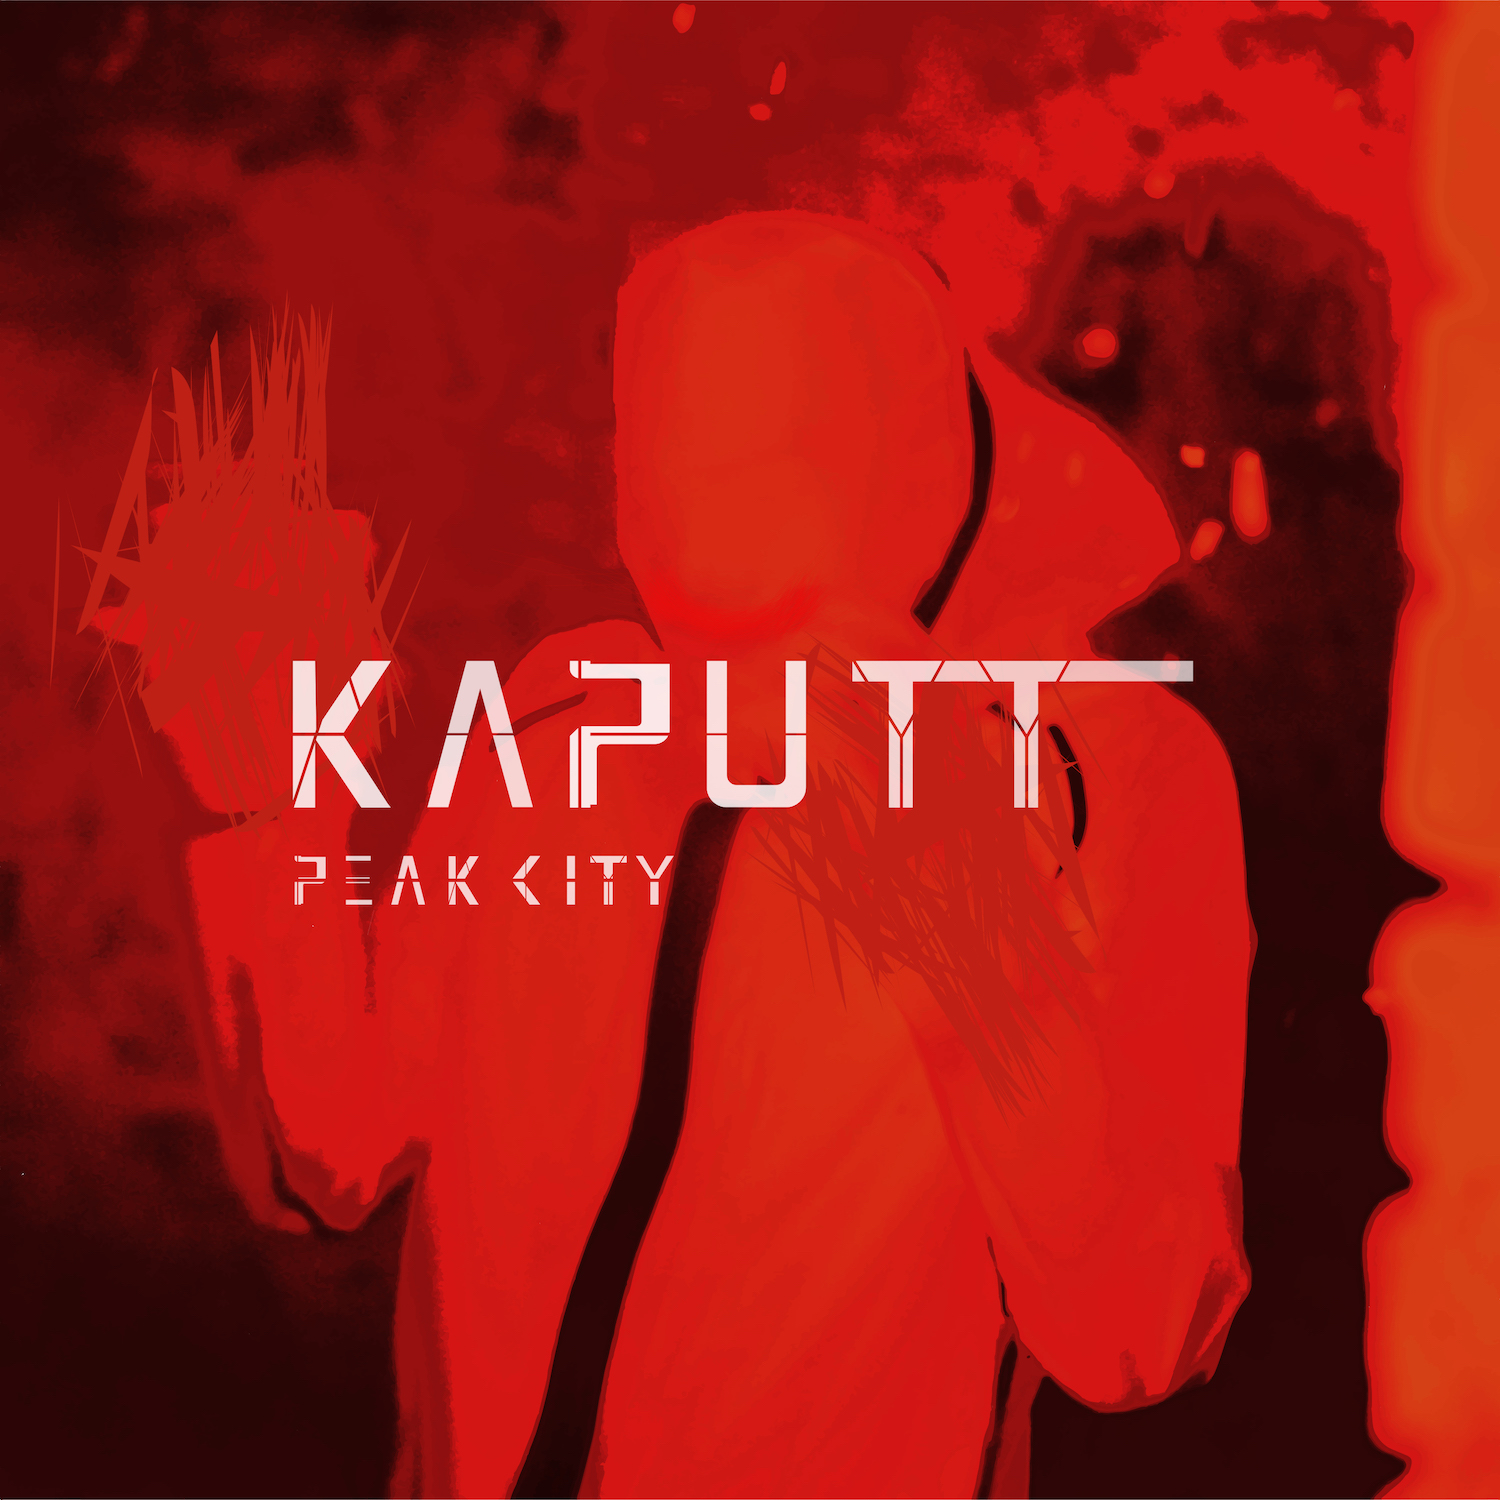 Peak City "Kaputt"